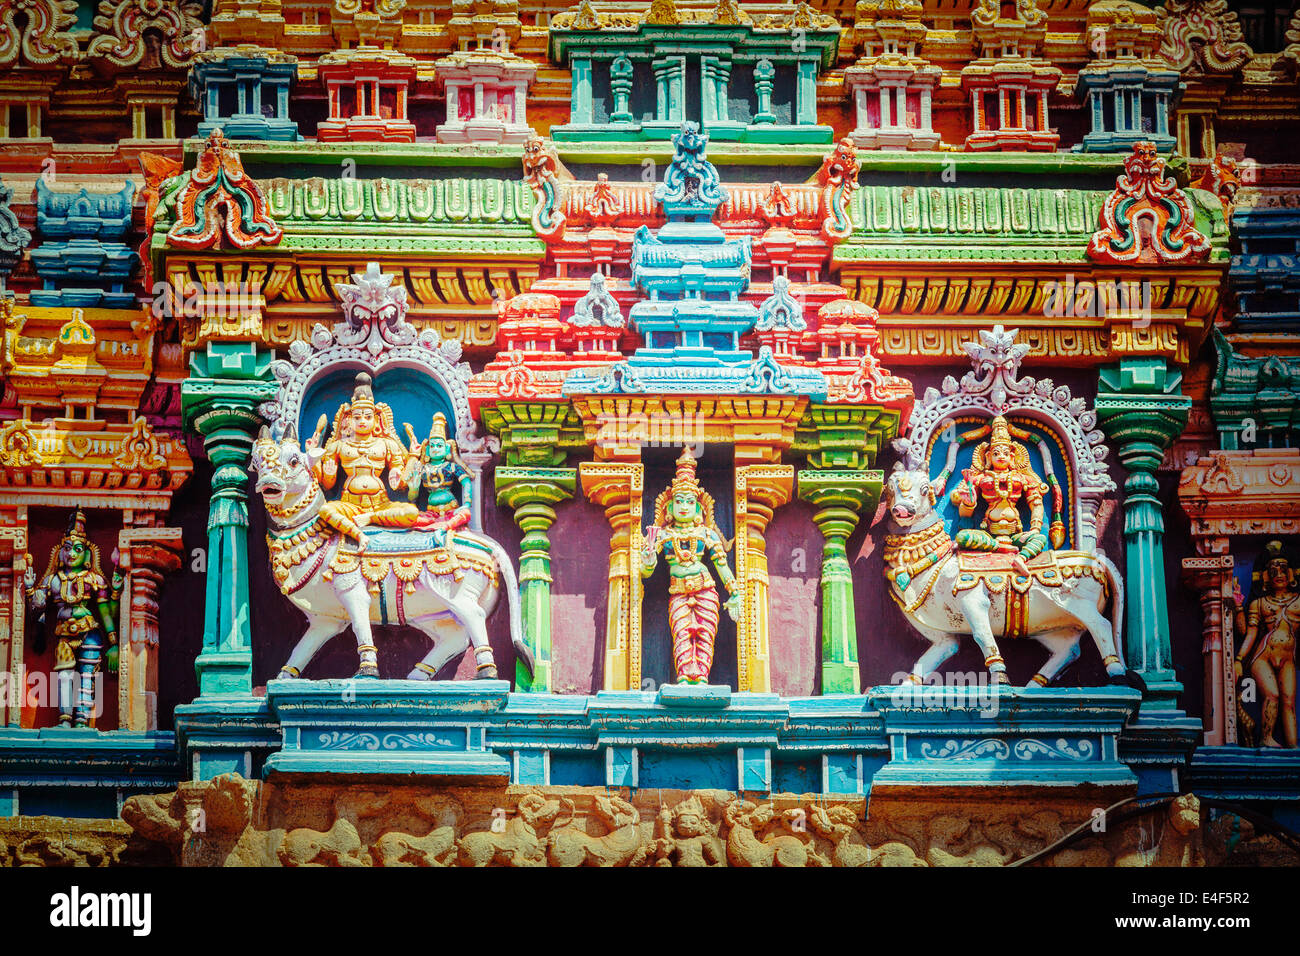 Vintage retrò hipster stile immagine di viaggio di Shiva e Parvati del Bull su immagini. Sculture sul tempio indù gopura (torre). Foto Stock